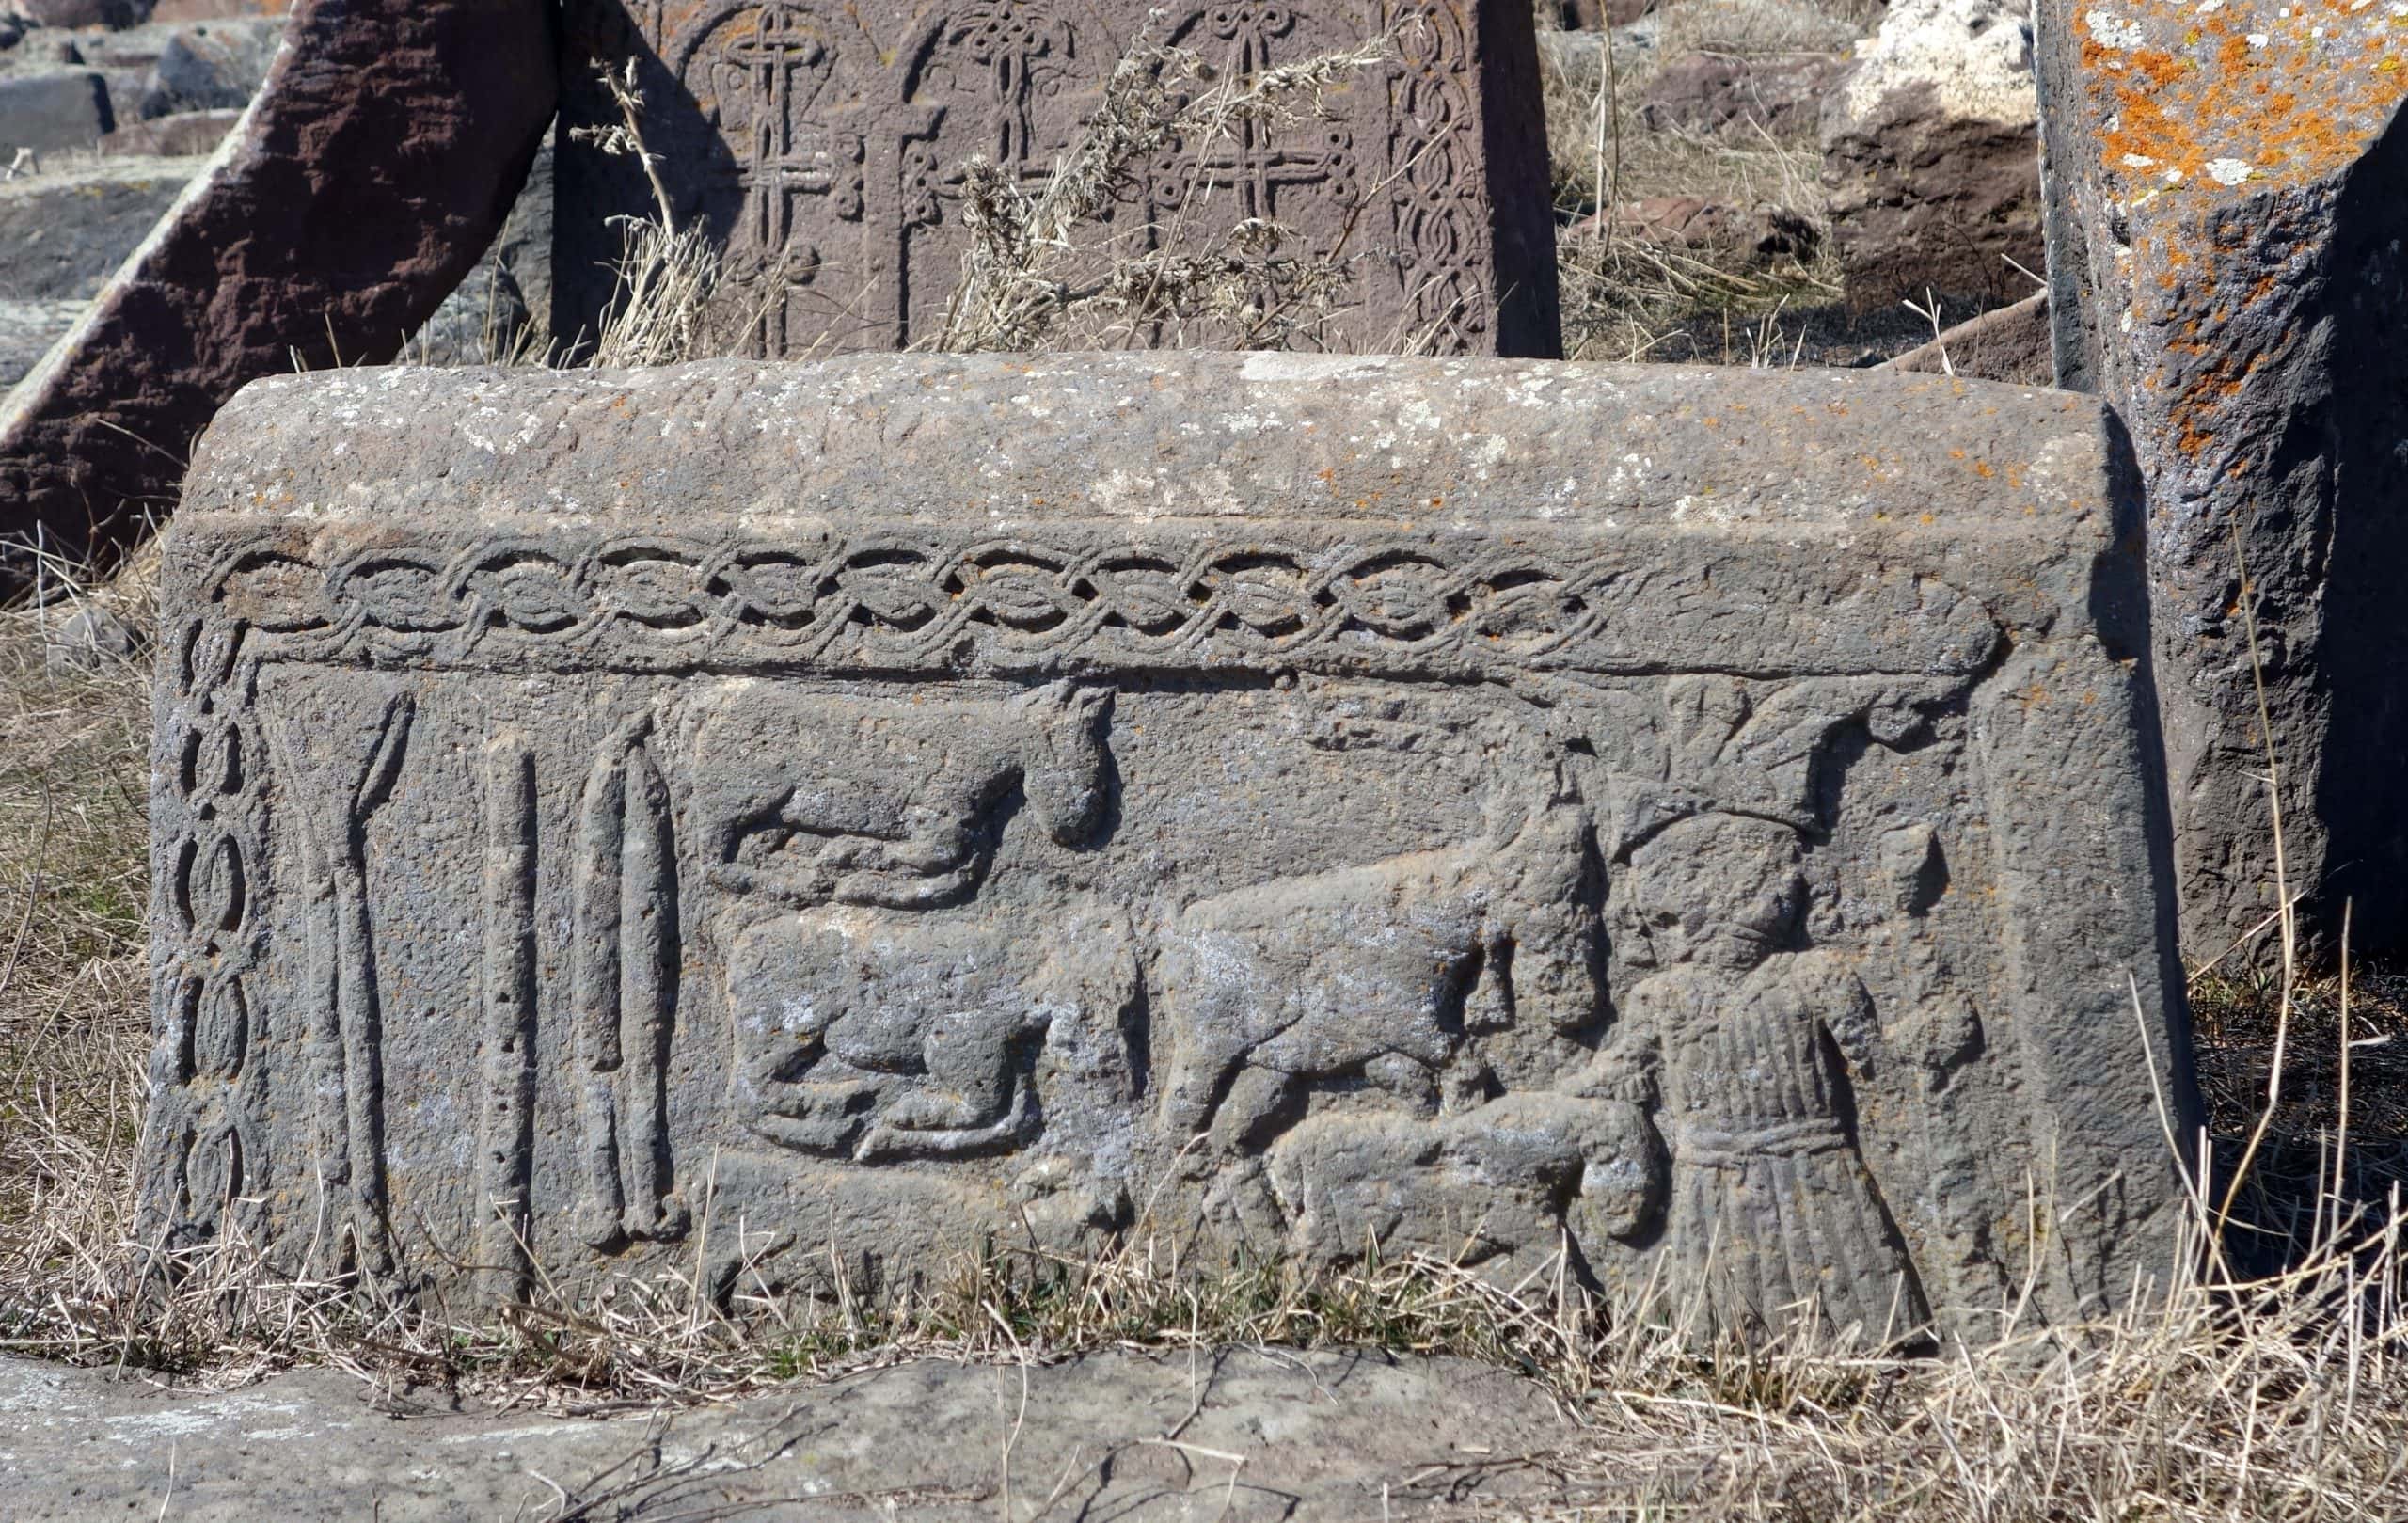 Prikaz čoveka i životinja na nadgobnom spomeniku u Noratusu, Jermenija